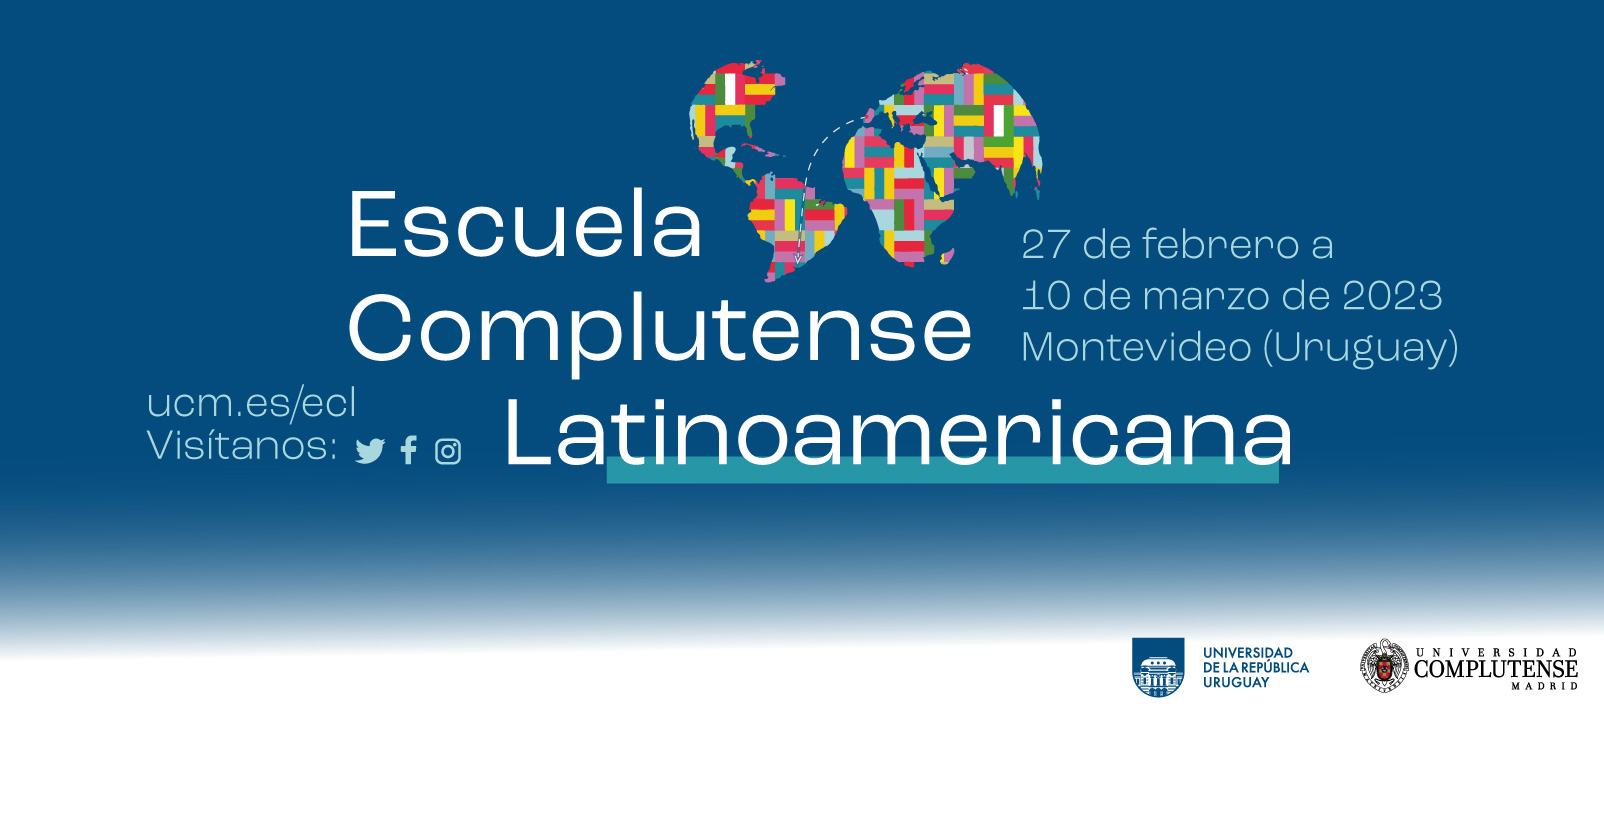 ¡Inscríbete en la próxima edición de la Escuela Complutense Latinoamericana en la UDELAR, Uruguay!